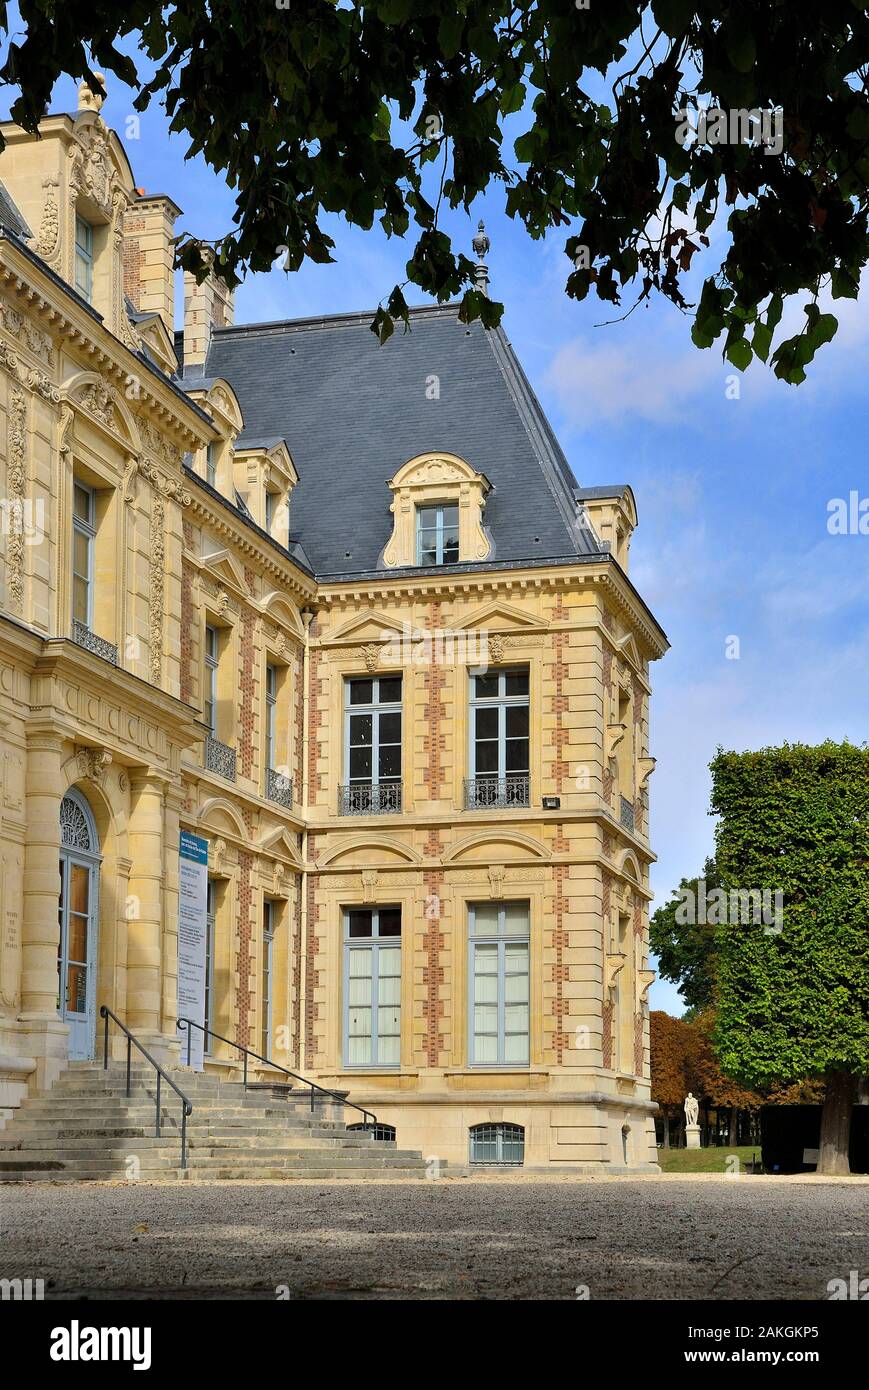 France, Hauts de Seine, sceaux, le parc et le château abritant le musée de l'Ile de France Banque D'Images